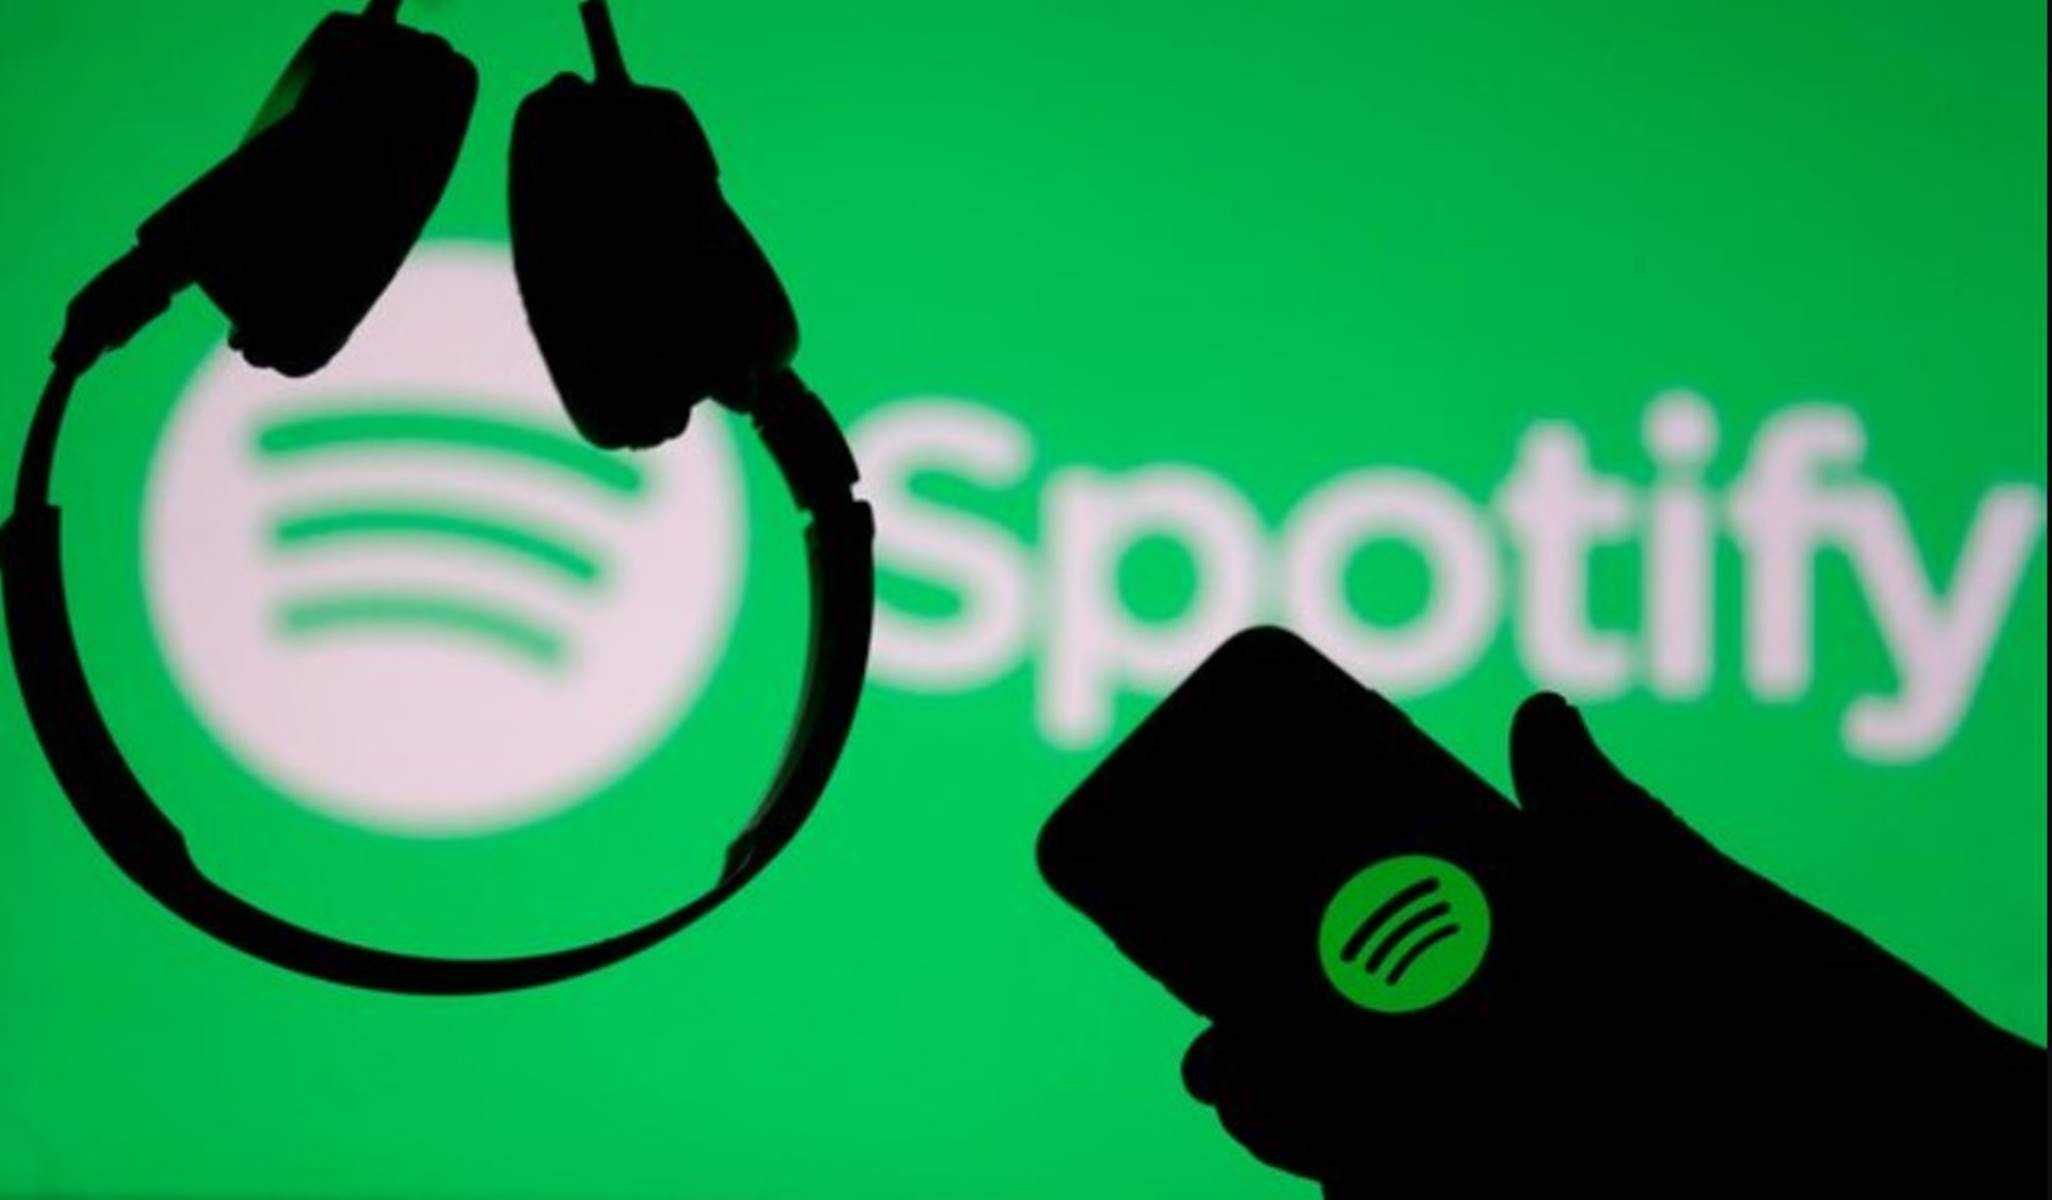  Spotify: Nova função permite comparar gostos musicais com outras pessoas